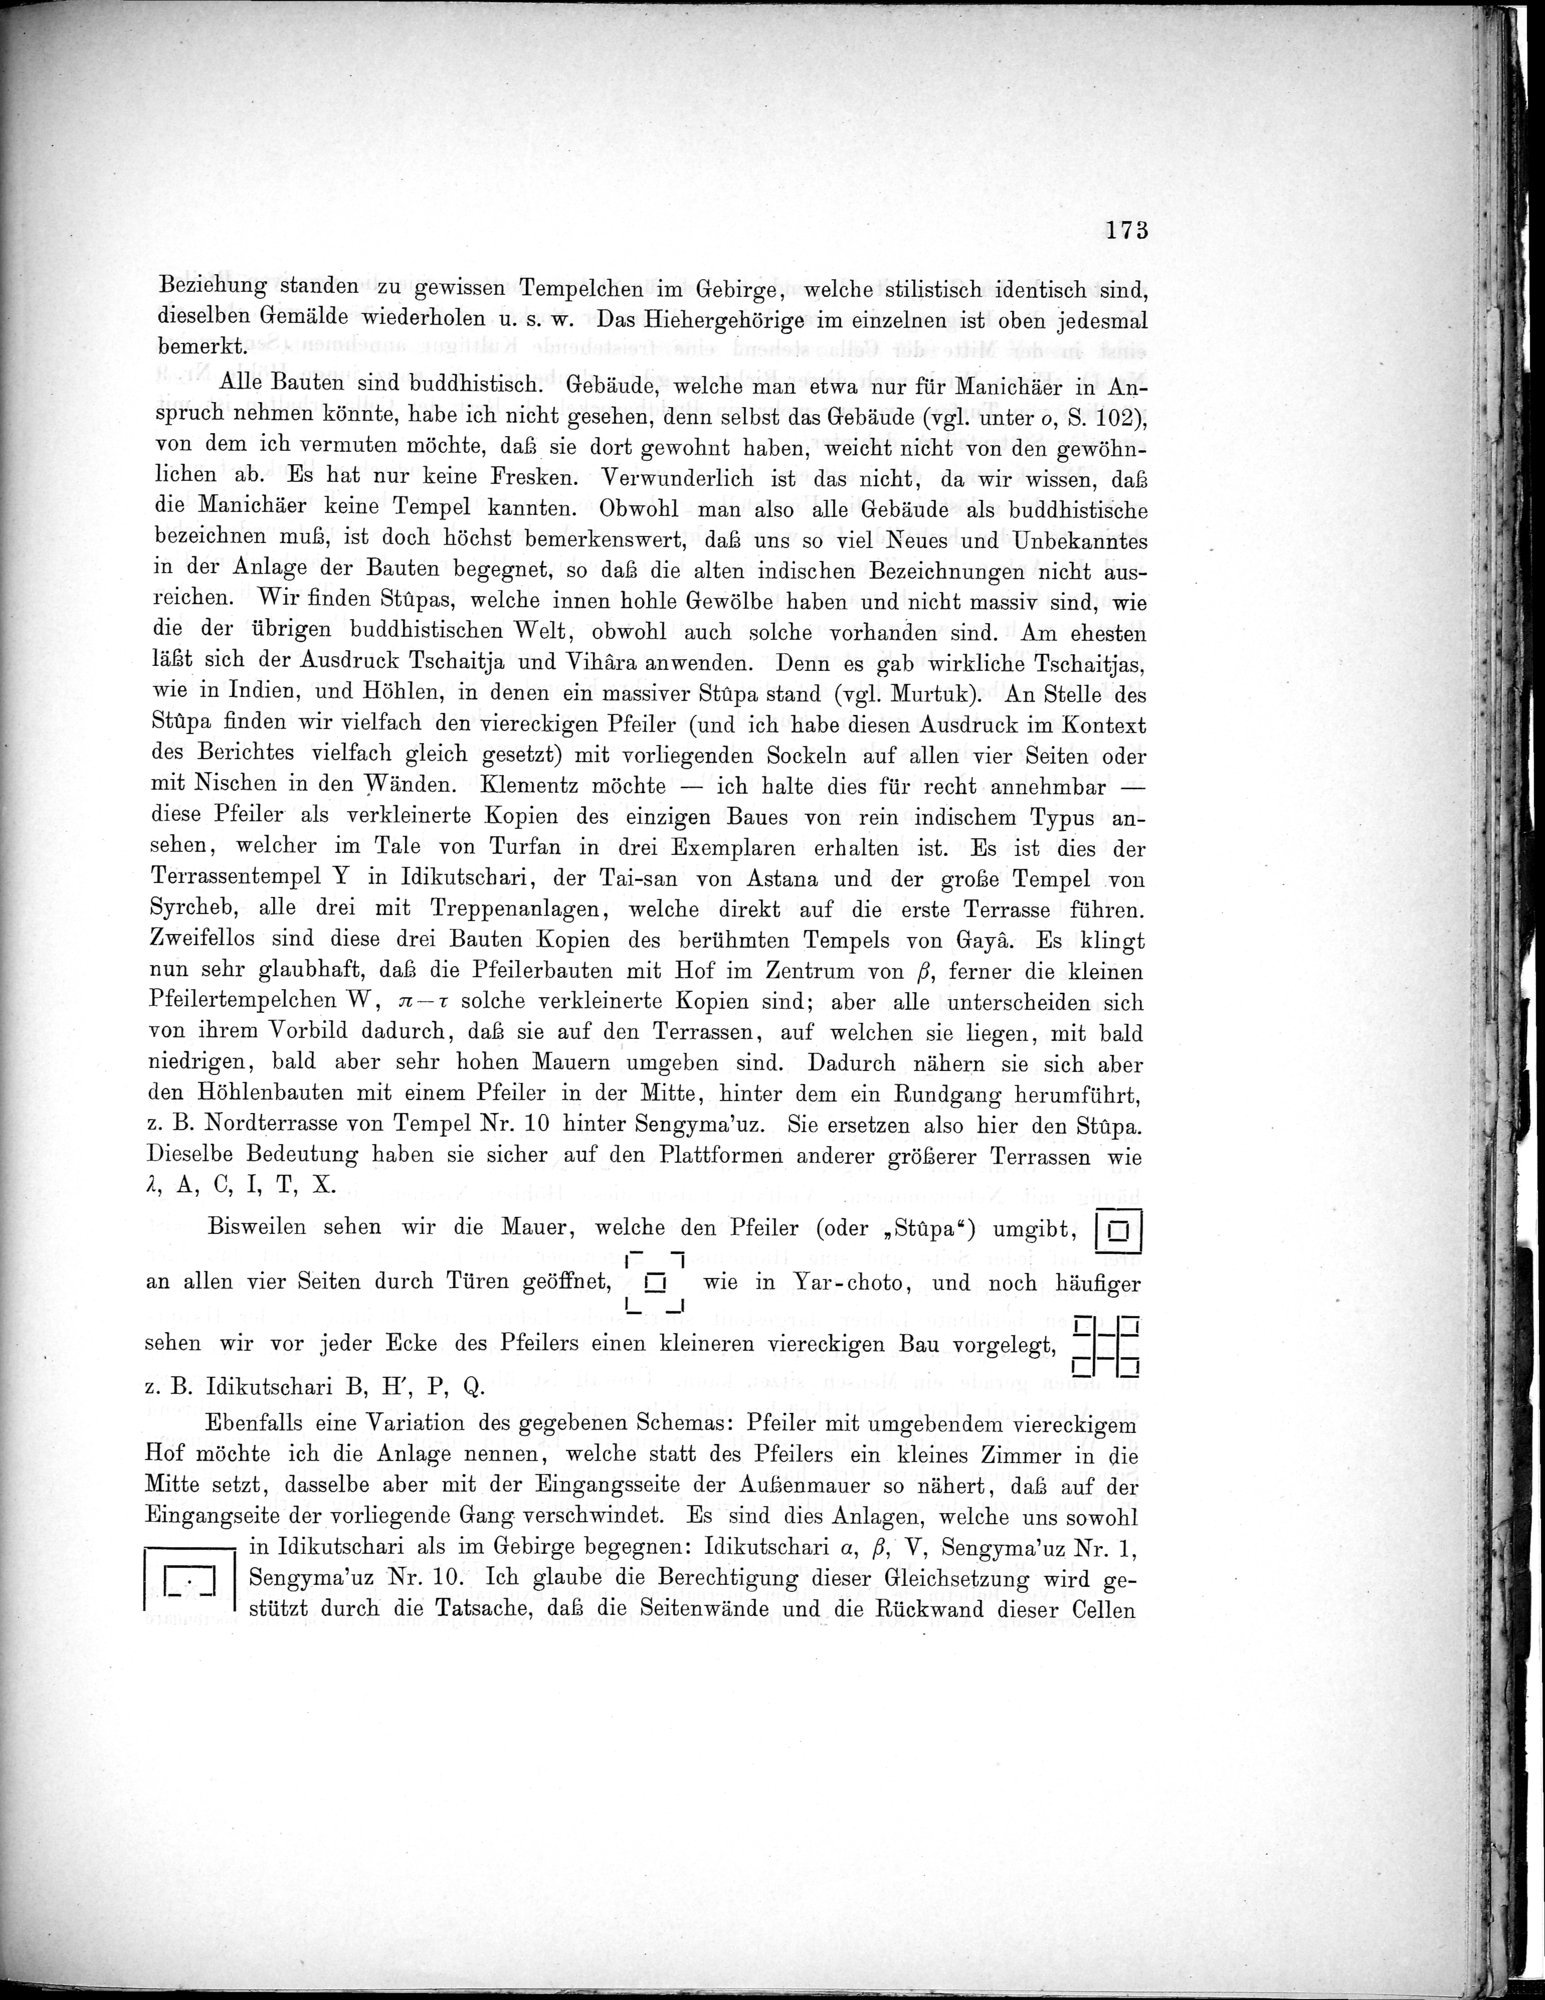 Bericht über archäologische Arbeiten in Idikutschari und Umgebung im Winter 1902-1903 : vol.1 / Page 183 (Grayscale High Resolution Image)